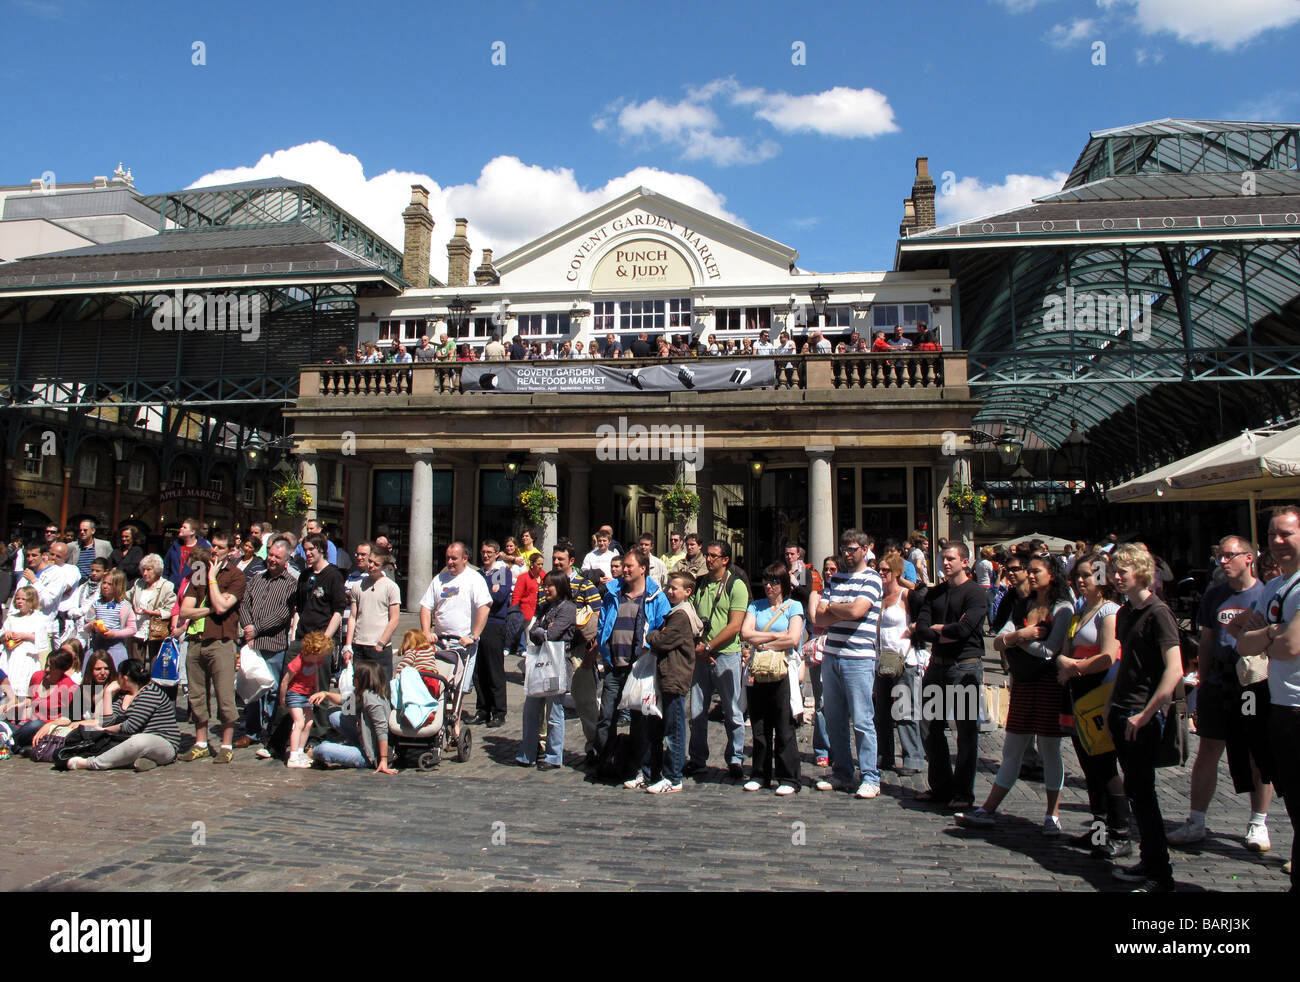 La folla di turisti a guardare gli artisti di strada musicista di strada sotto il sole al di fuori di Punch e Judy pub al mercato di Covent Garden di Londra. Foto Stock